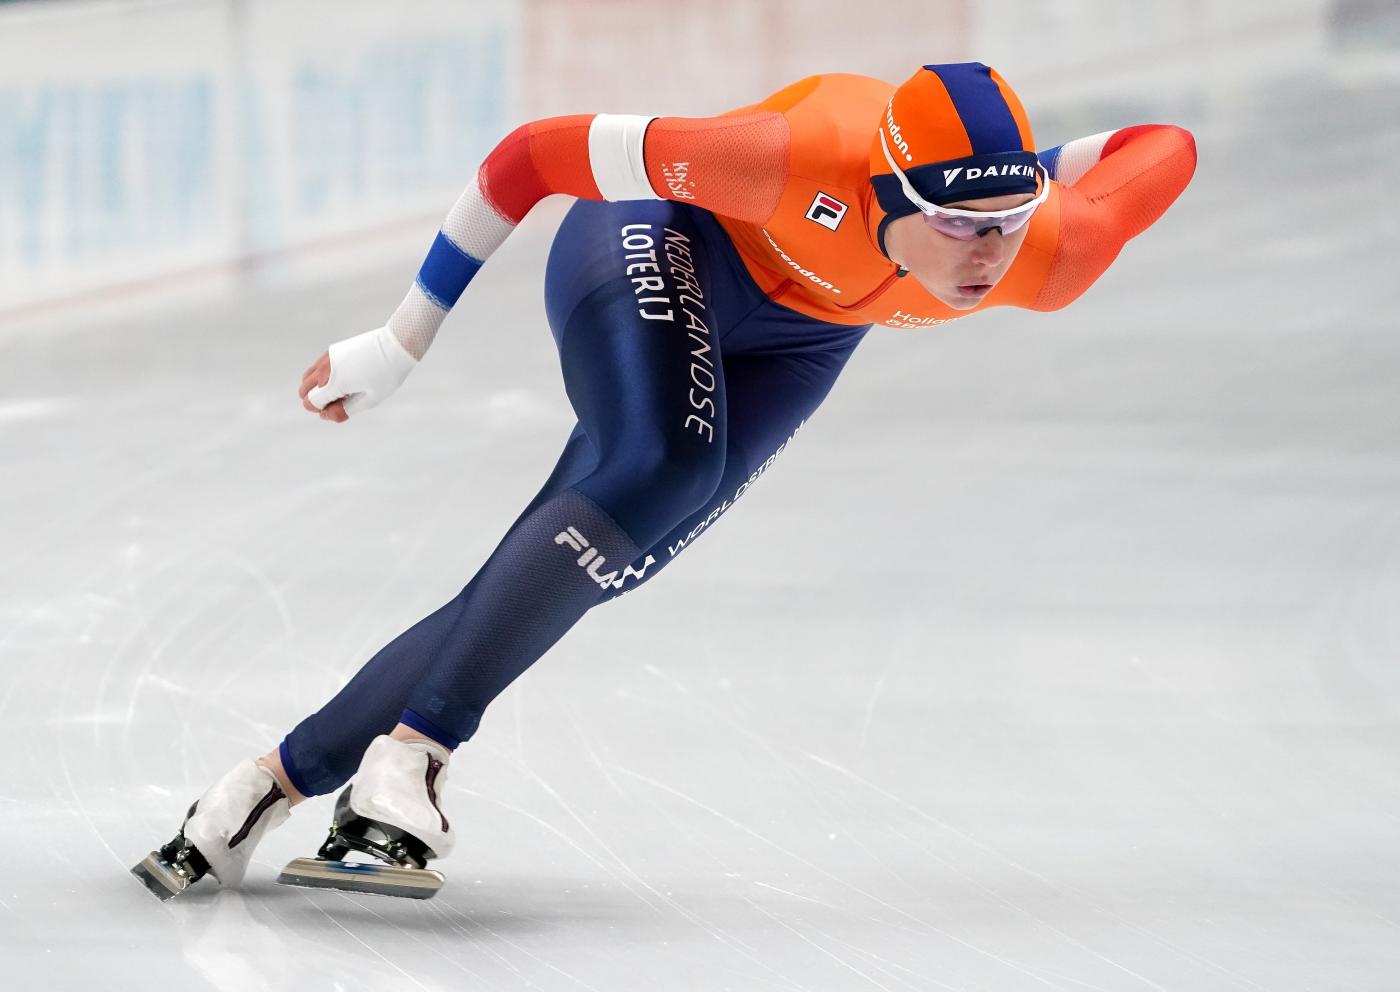 Hervat Atticus krekel Nederlanders steeds dichter in de buurt van podium 500 meter | Schaatsen.nl